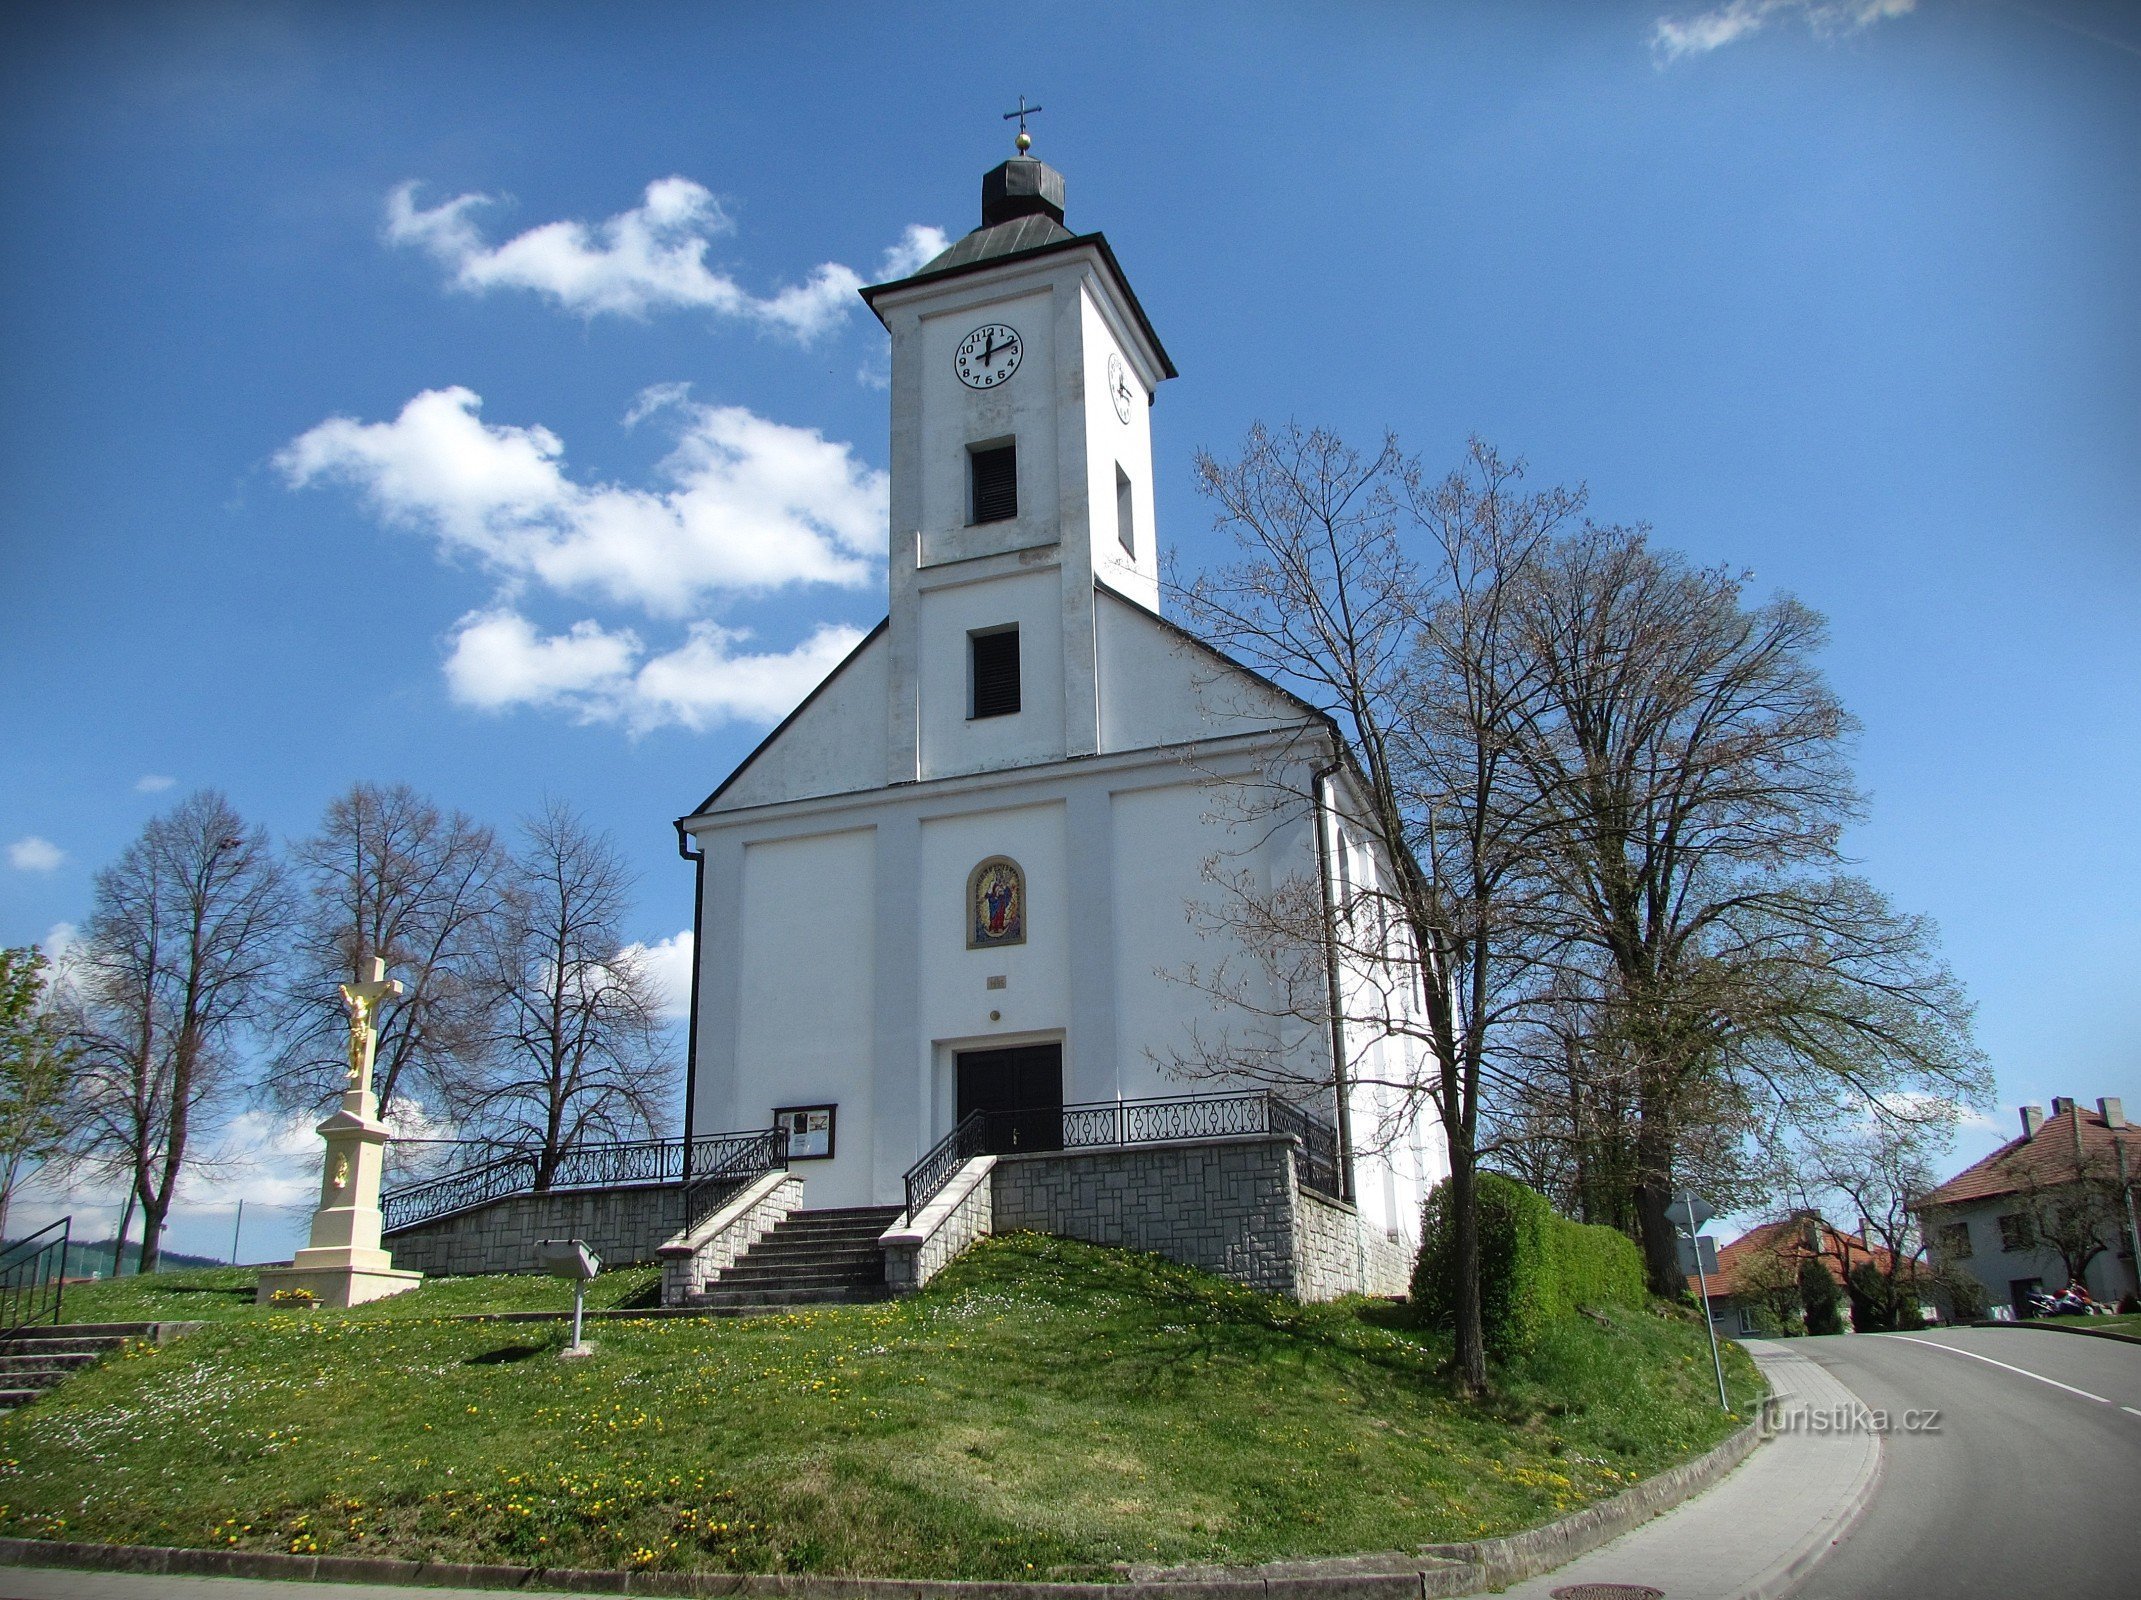 Slopné - kirken St. Roch